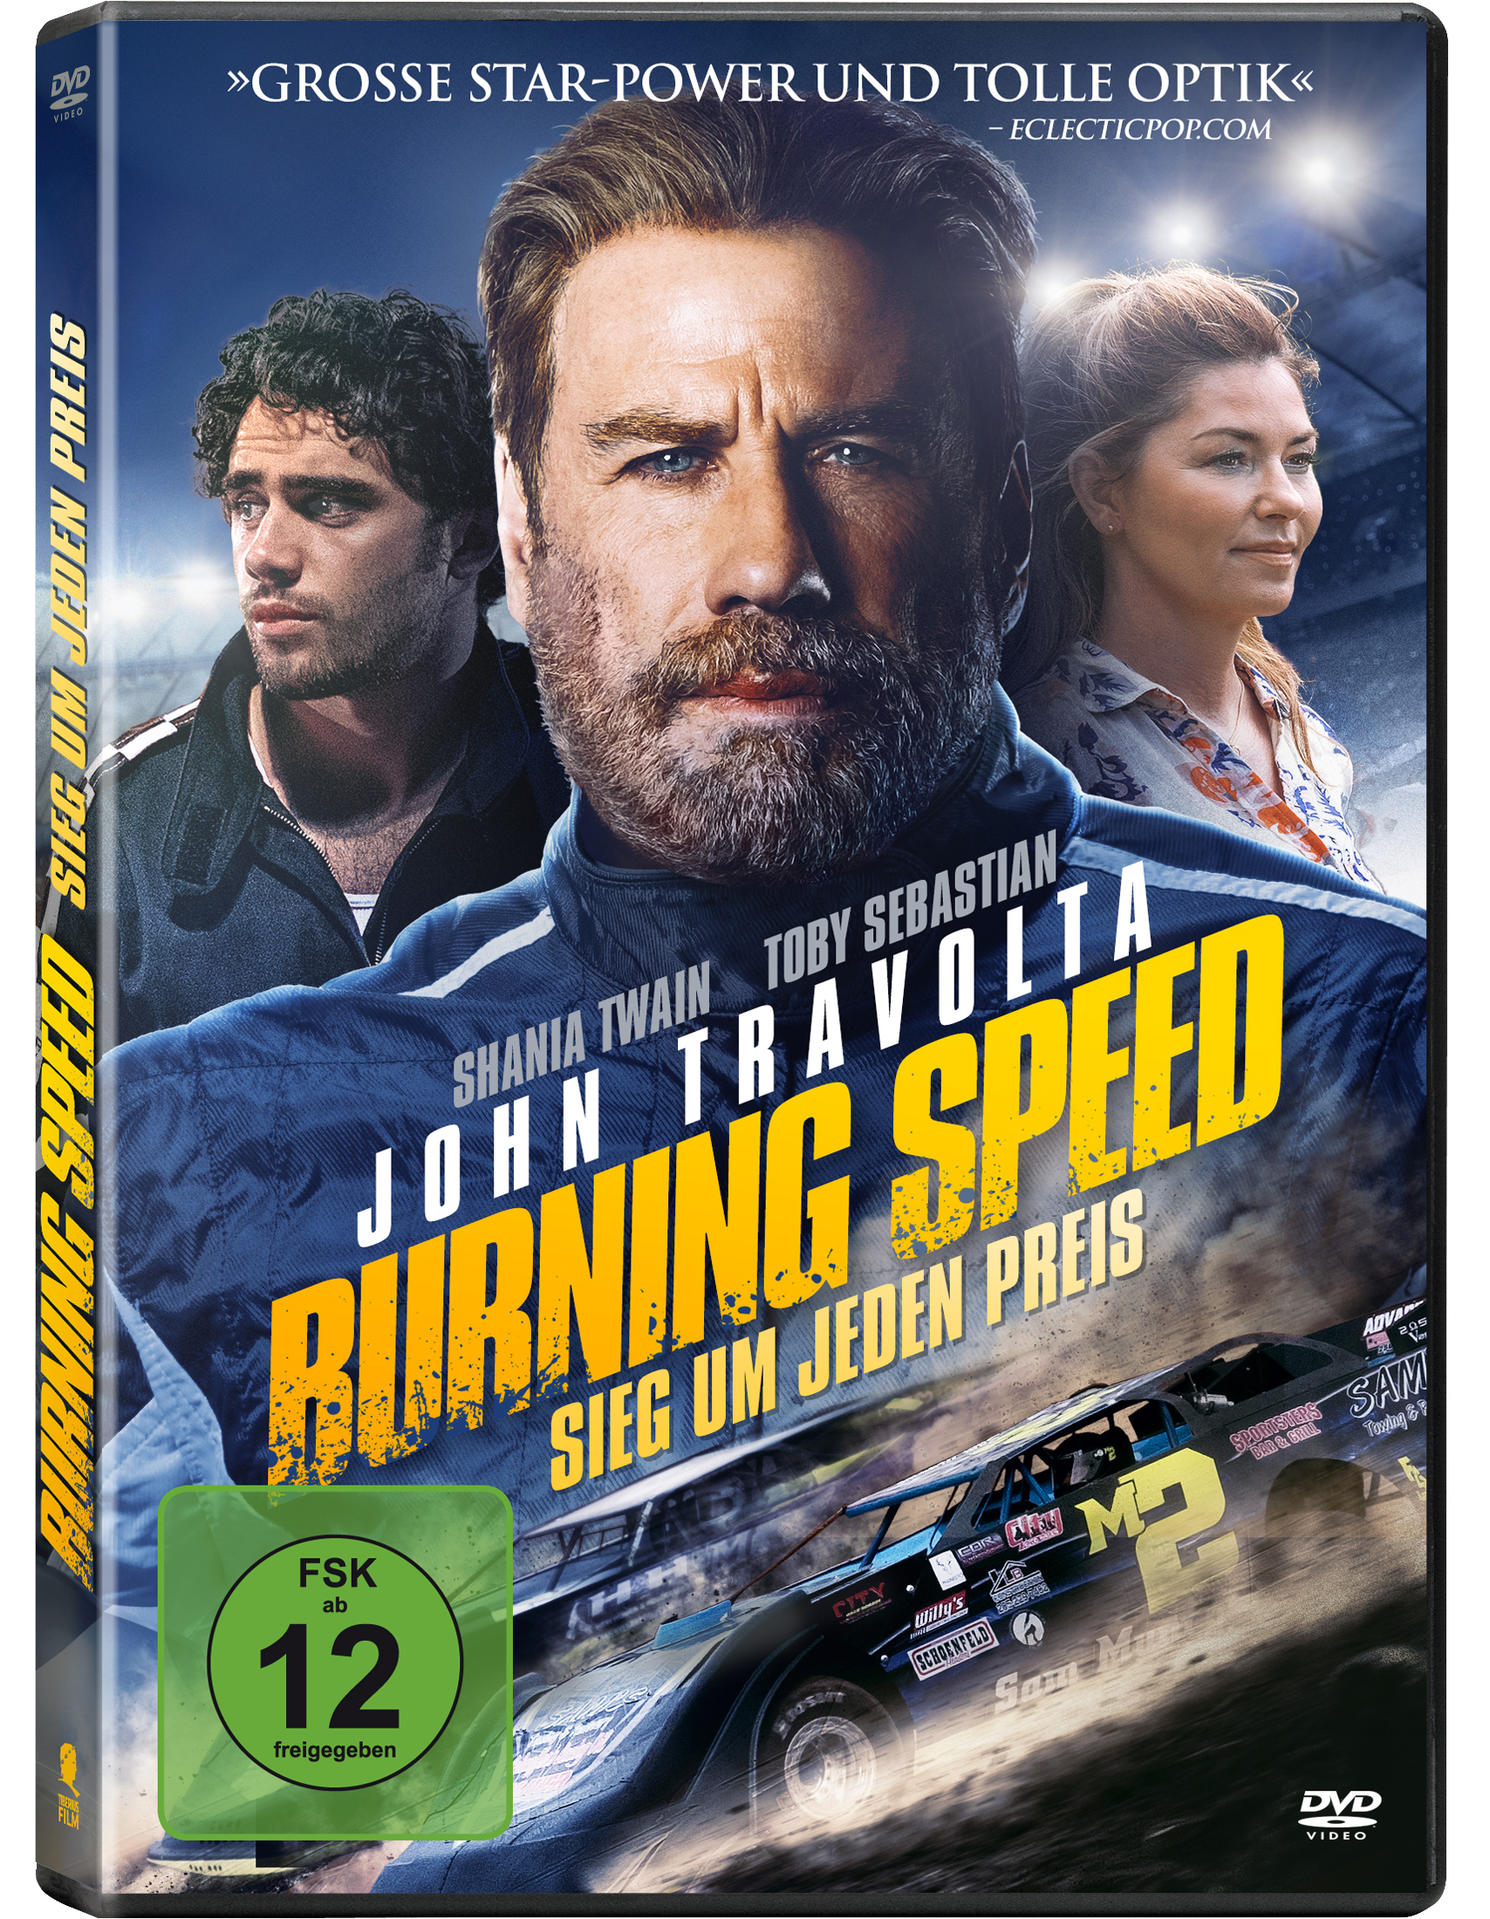 Speed - DVD Preis Sieg Burning um jeden